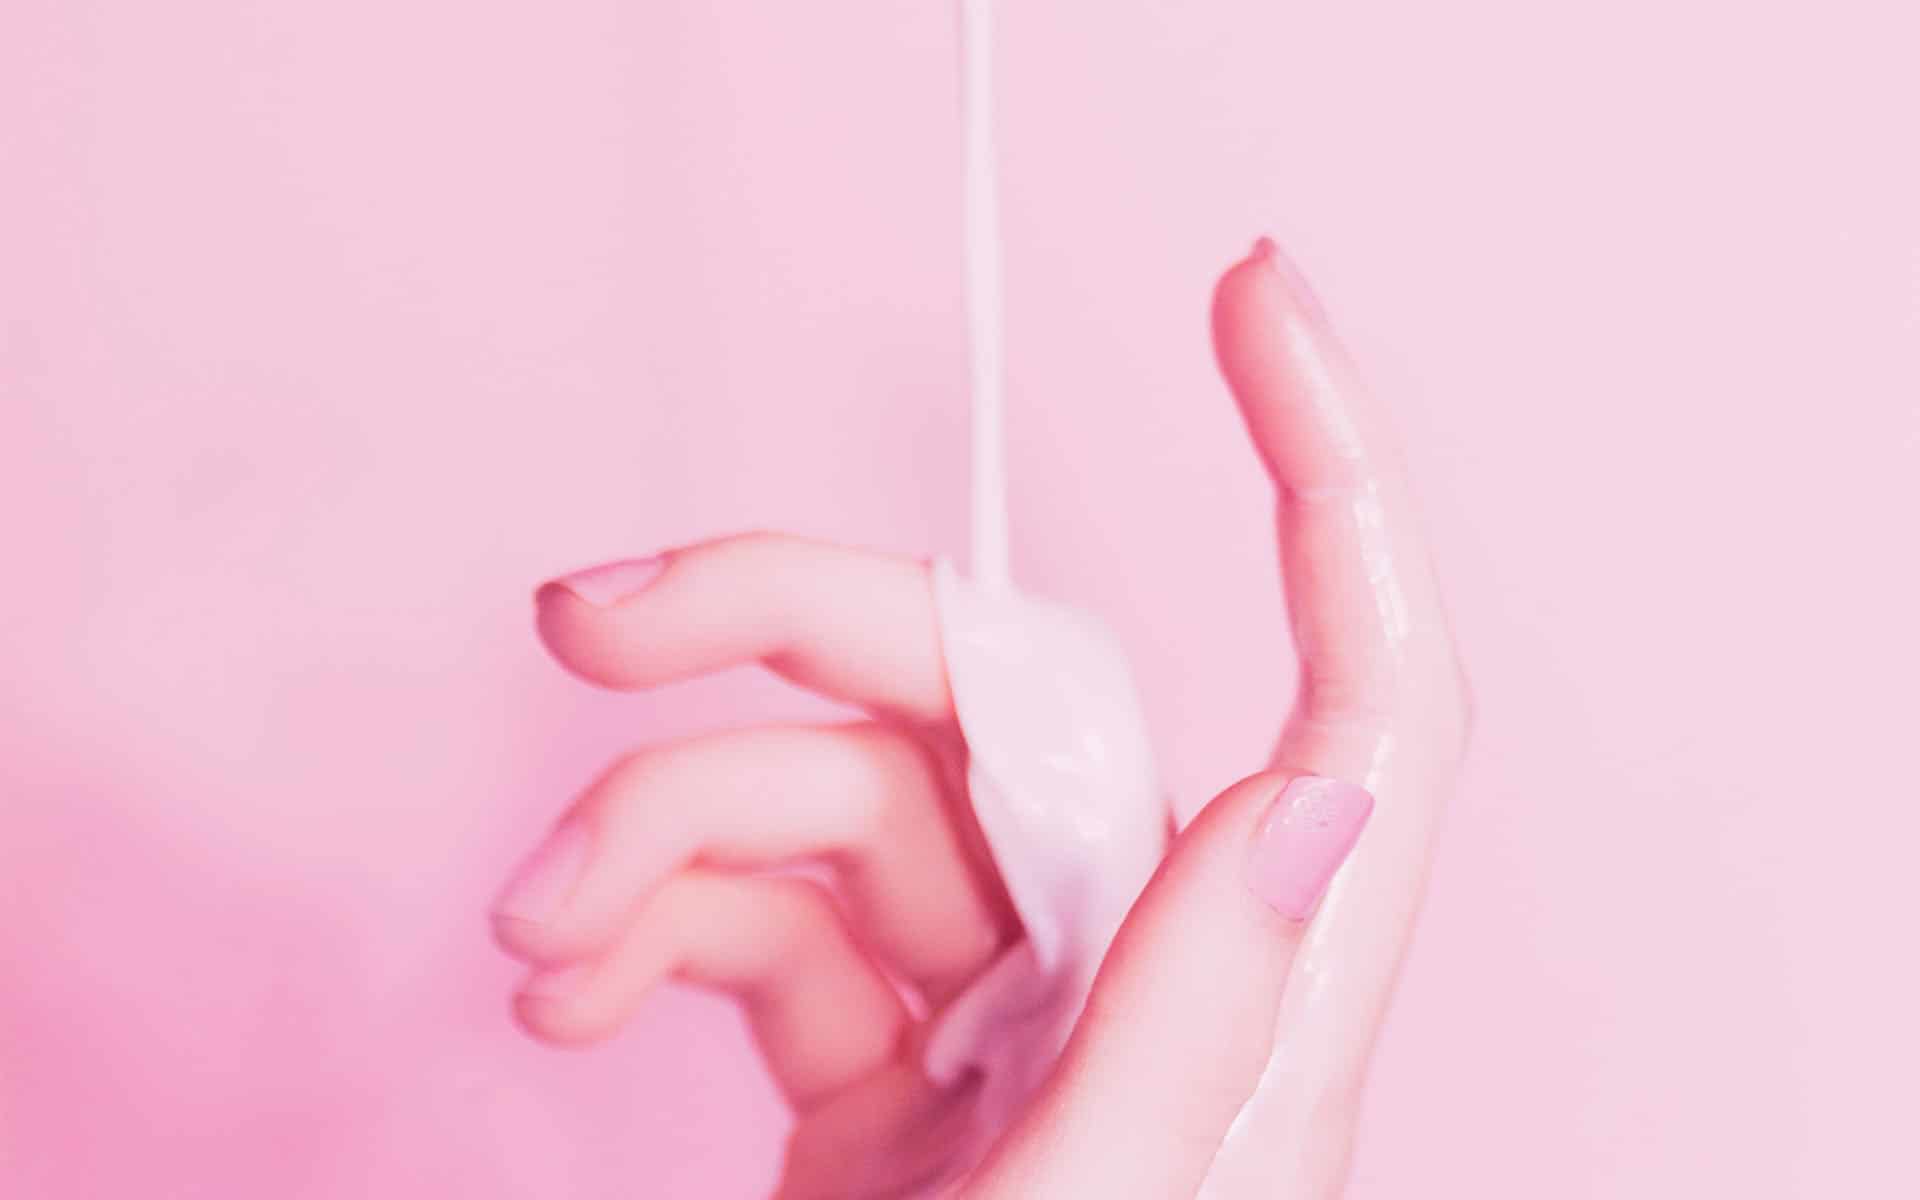 mano con liquido blanco en fondo rosa